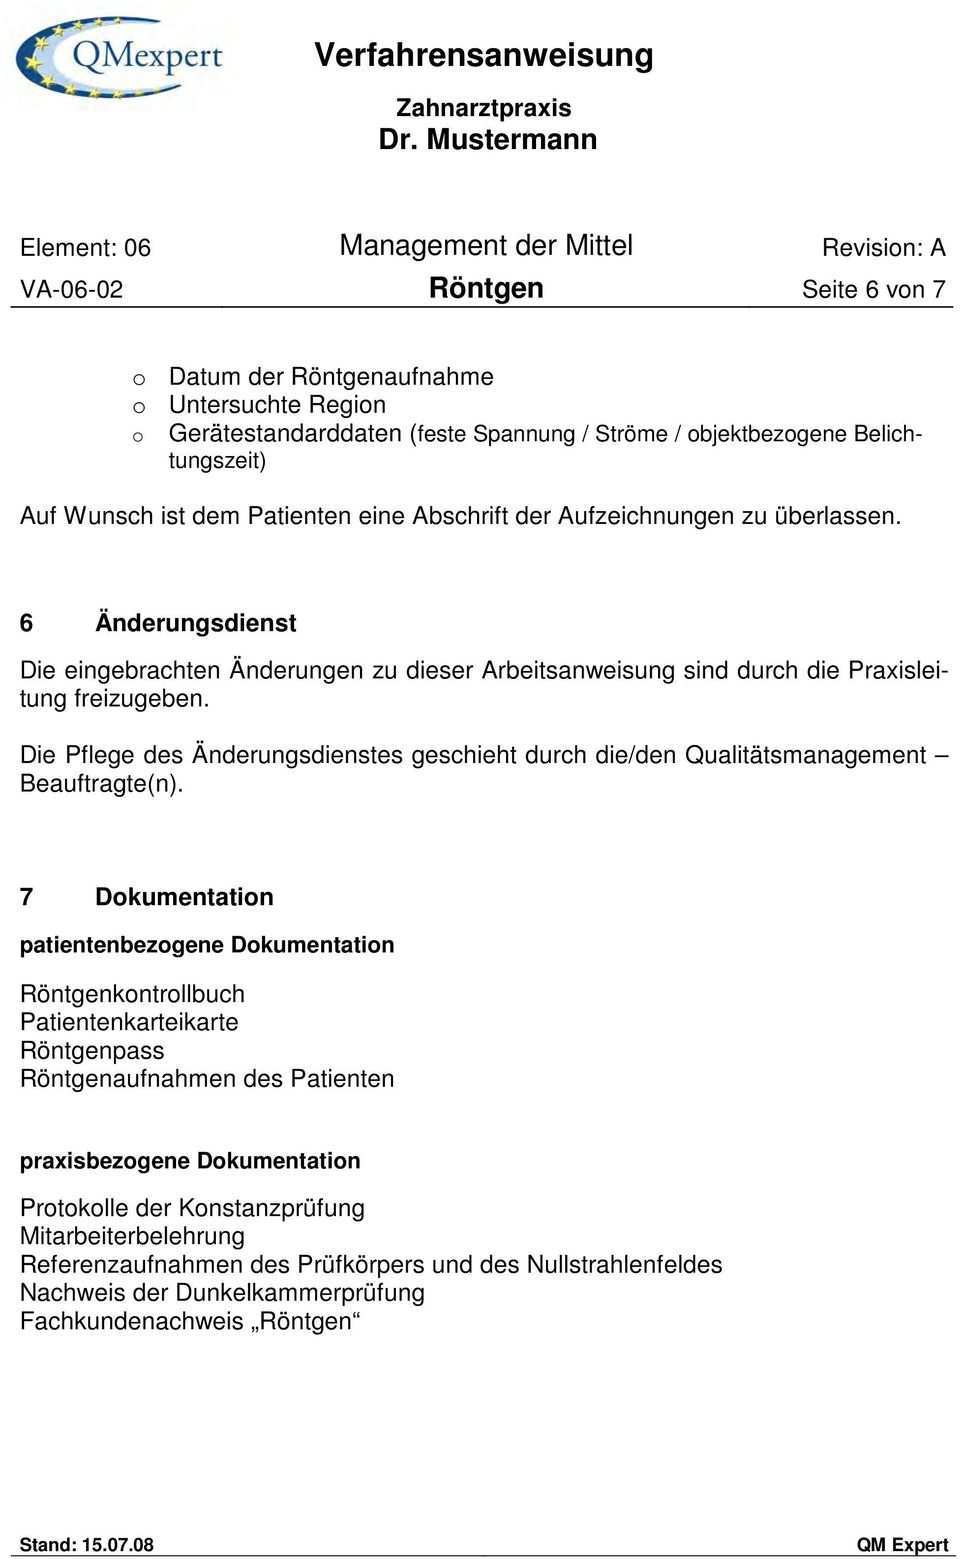 Verfahrensanweisung Zahnarztpraxis Dr Mustermann Element 06 Management Der Mittel Revision A Va Rontgen Seite 1 Von 7 Pdf Kostenfreier Download